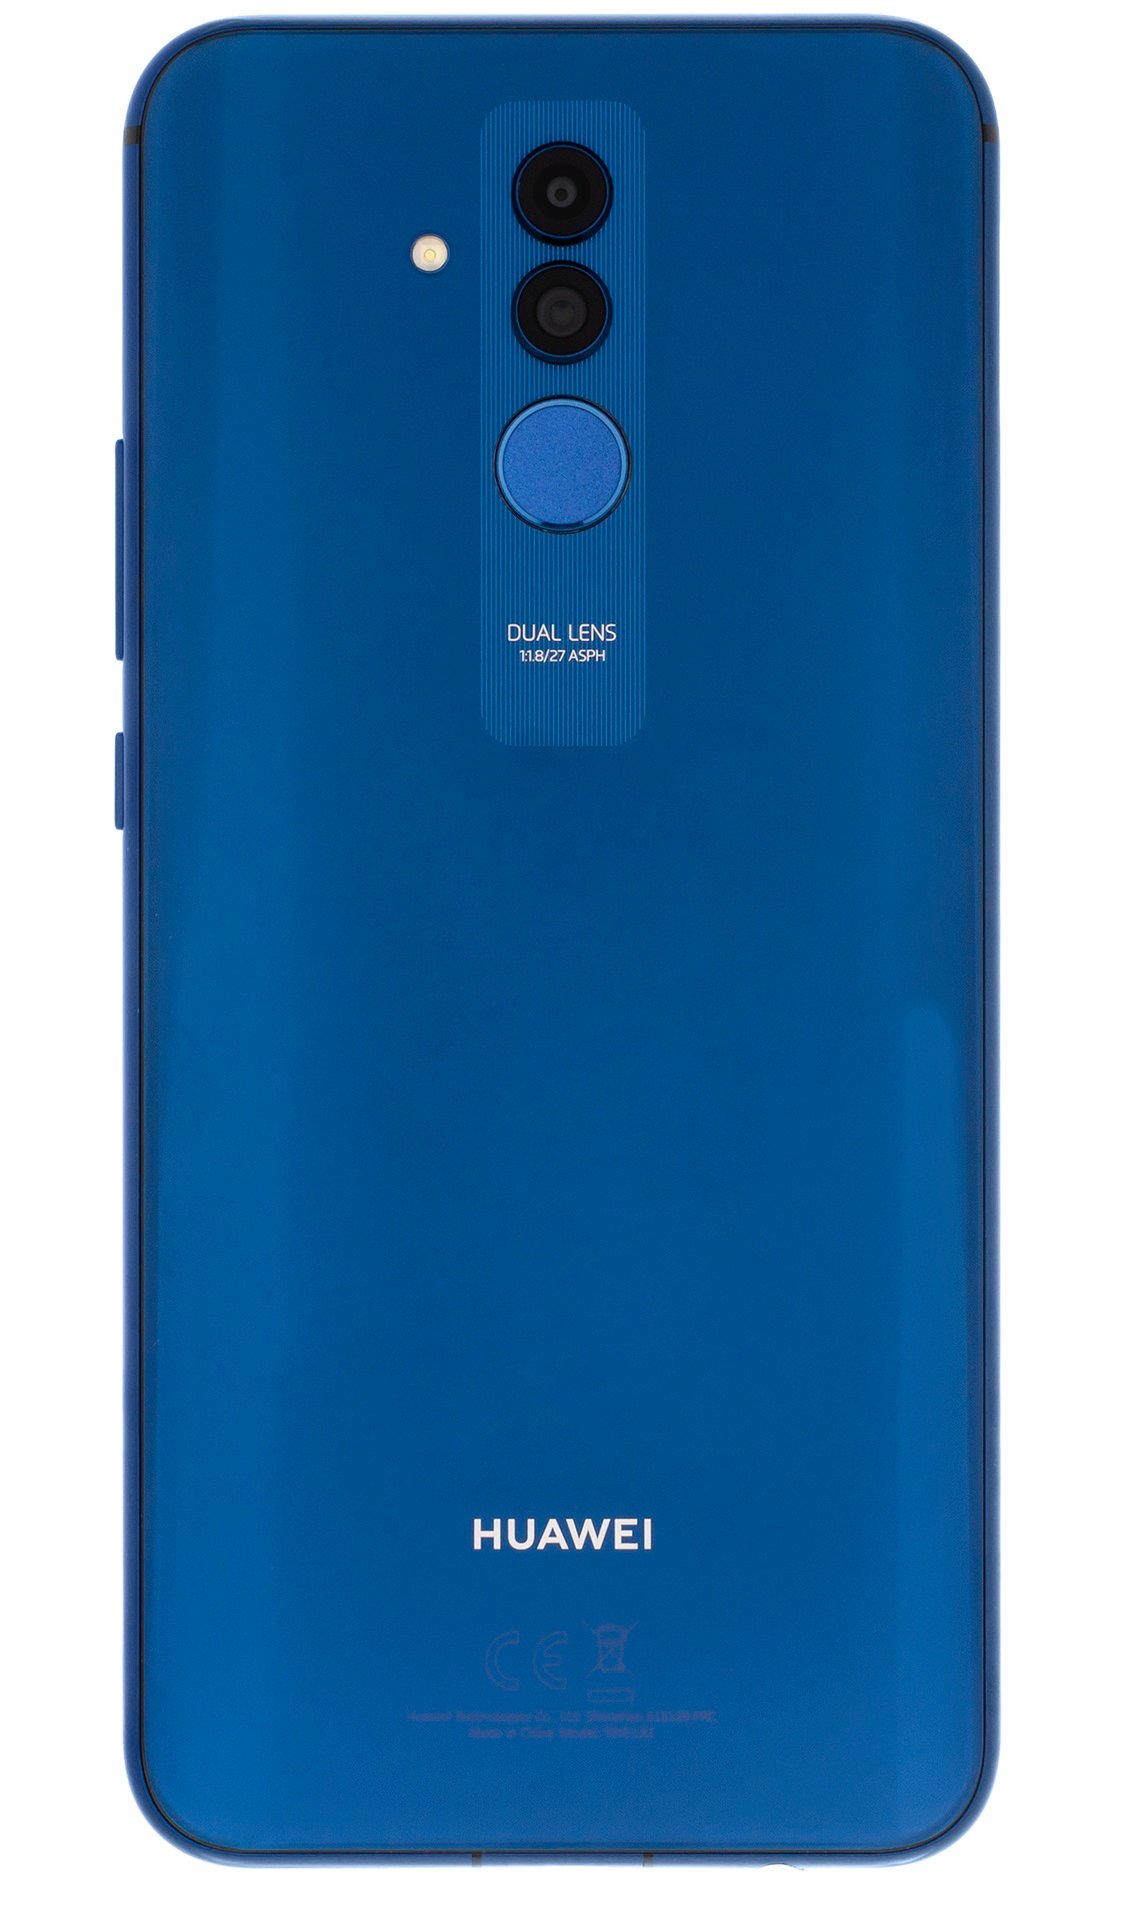 HUAWEI Mate 20 Lite 4/64GB 6.3" Niebieski 51092RKP Smartfon - niskie ceny i  opinie w Media Expert